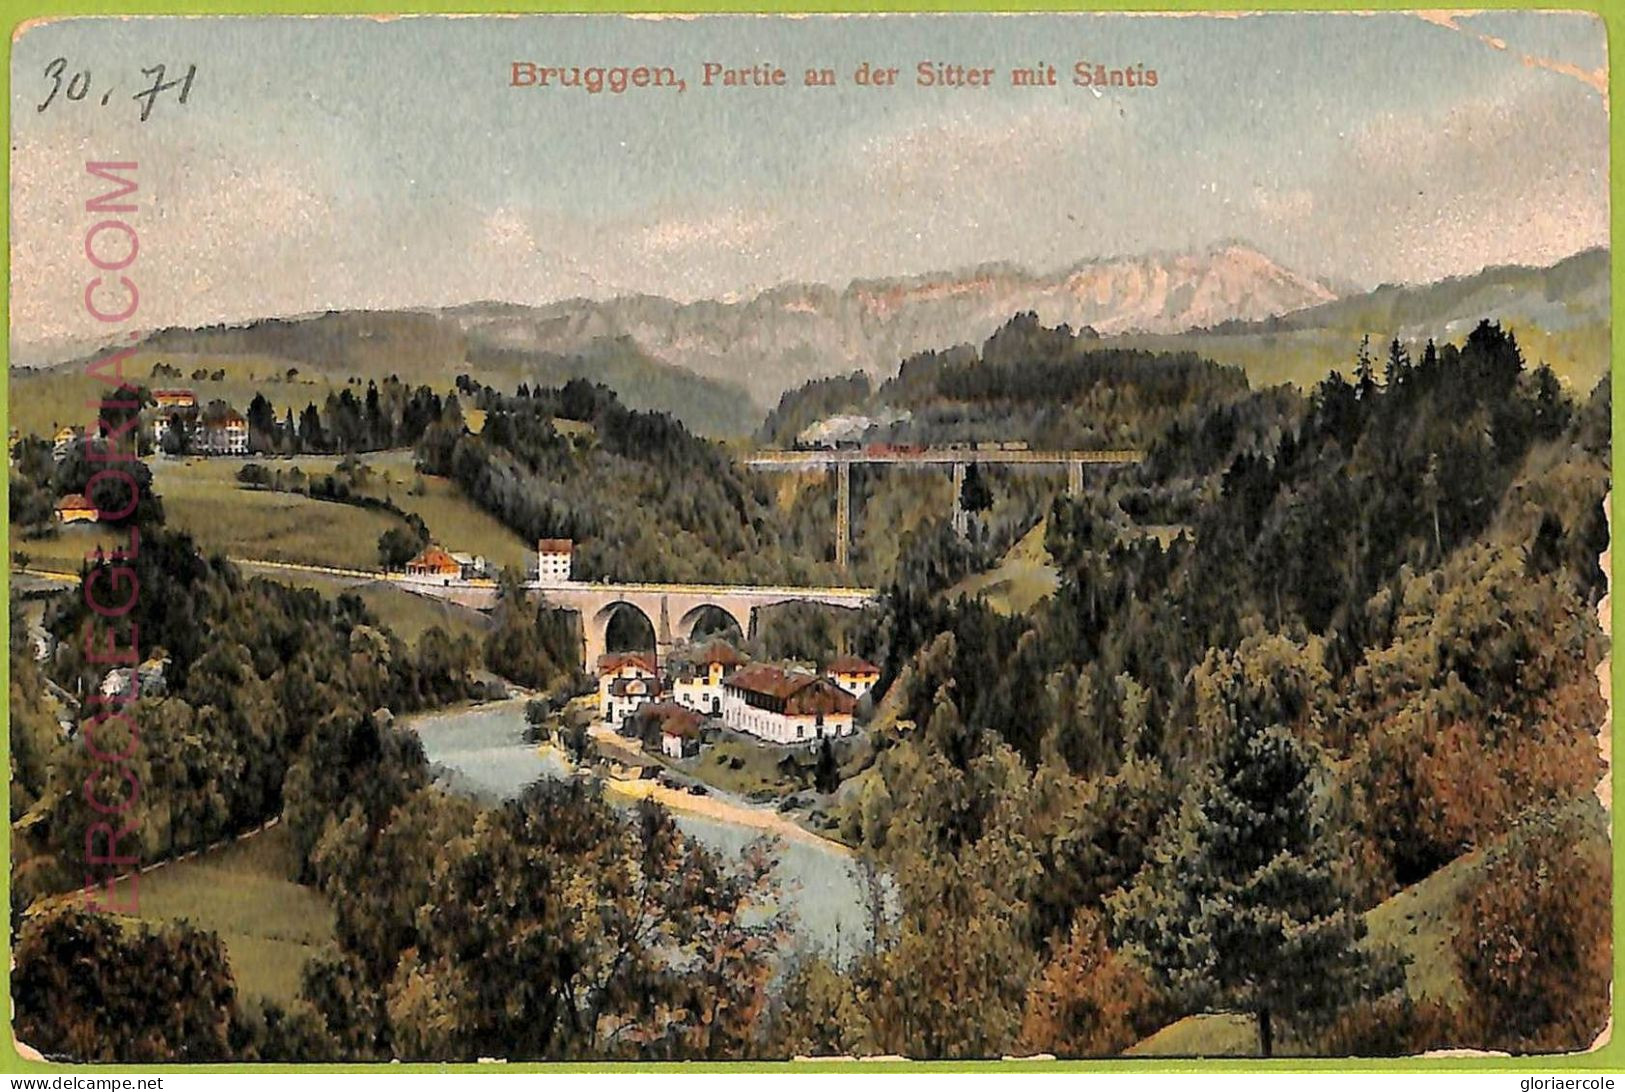 Ad5682 - SWITZERLAND Schweitz - Ansichtskarten VINTAGE POSTCARD - Bruggen - 1909 - Brugg